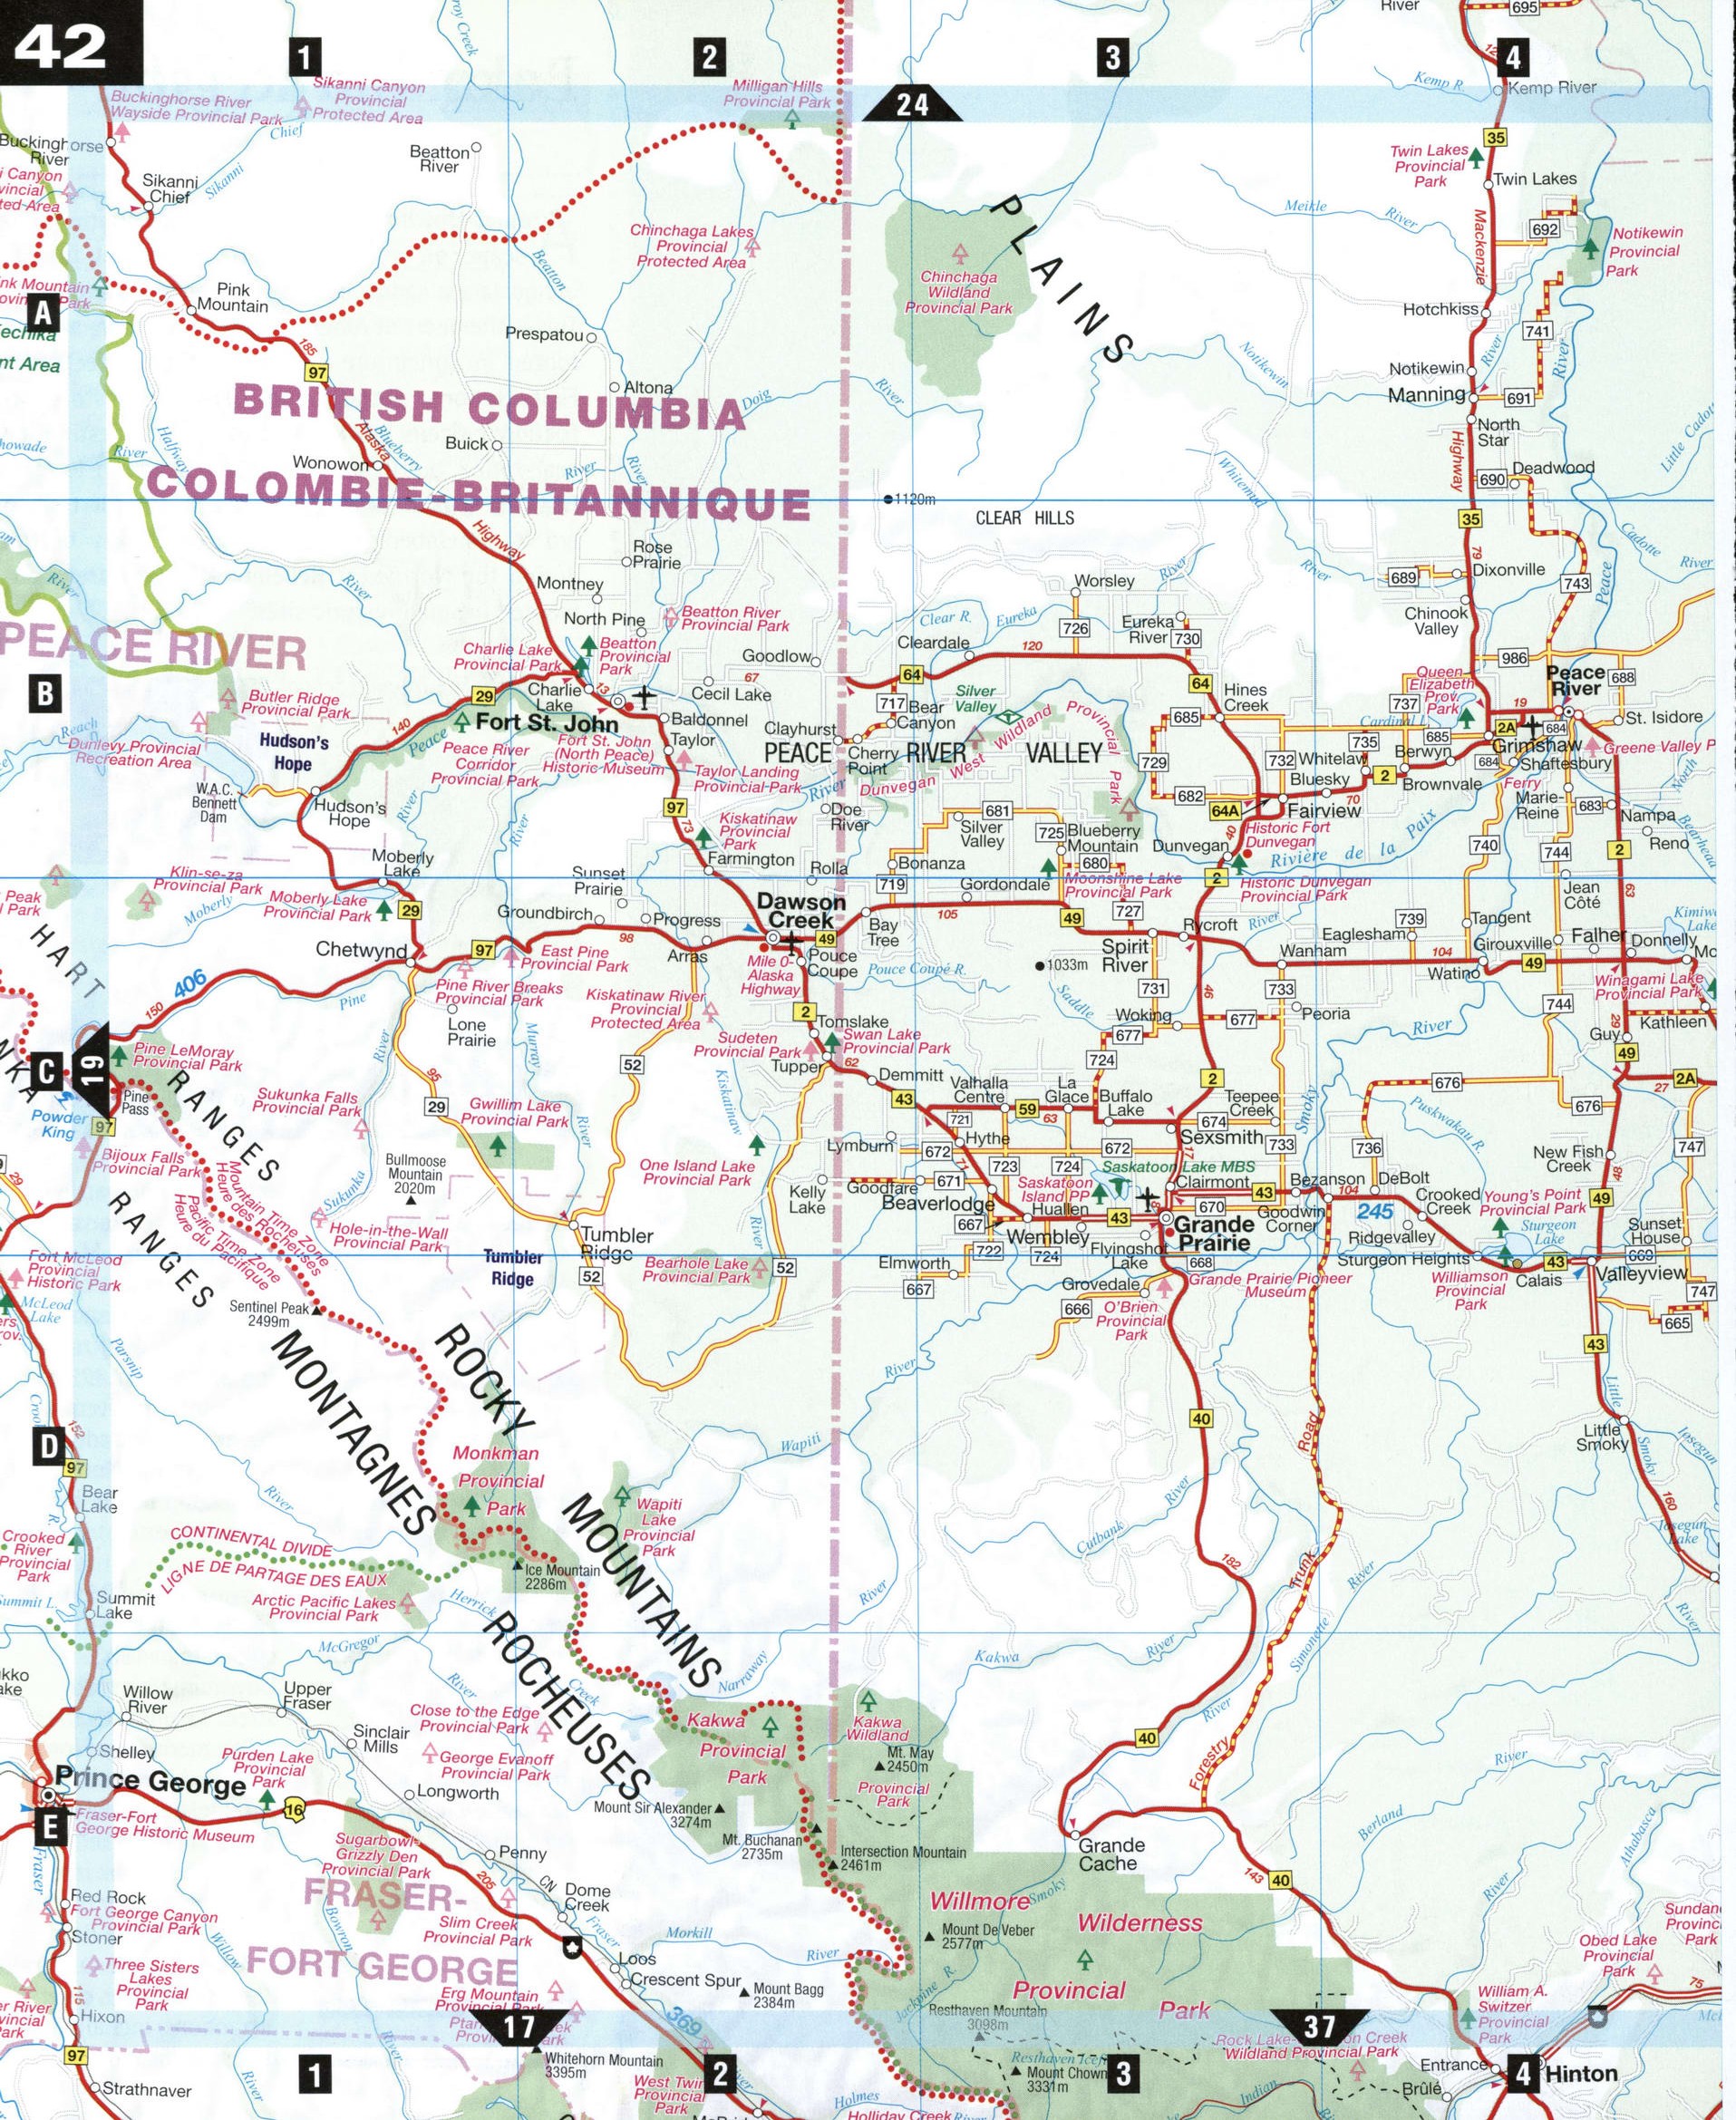 Map border Alberta and BC 